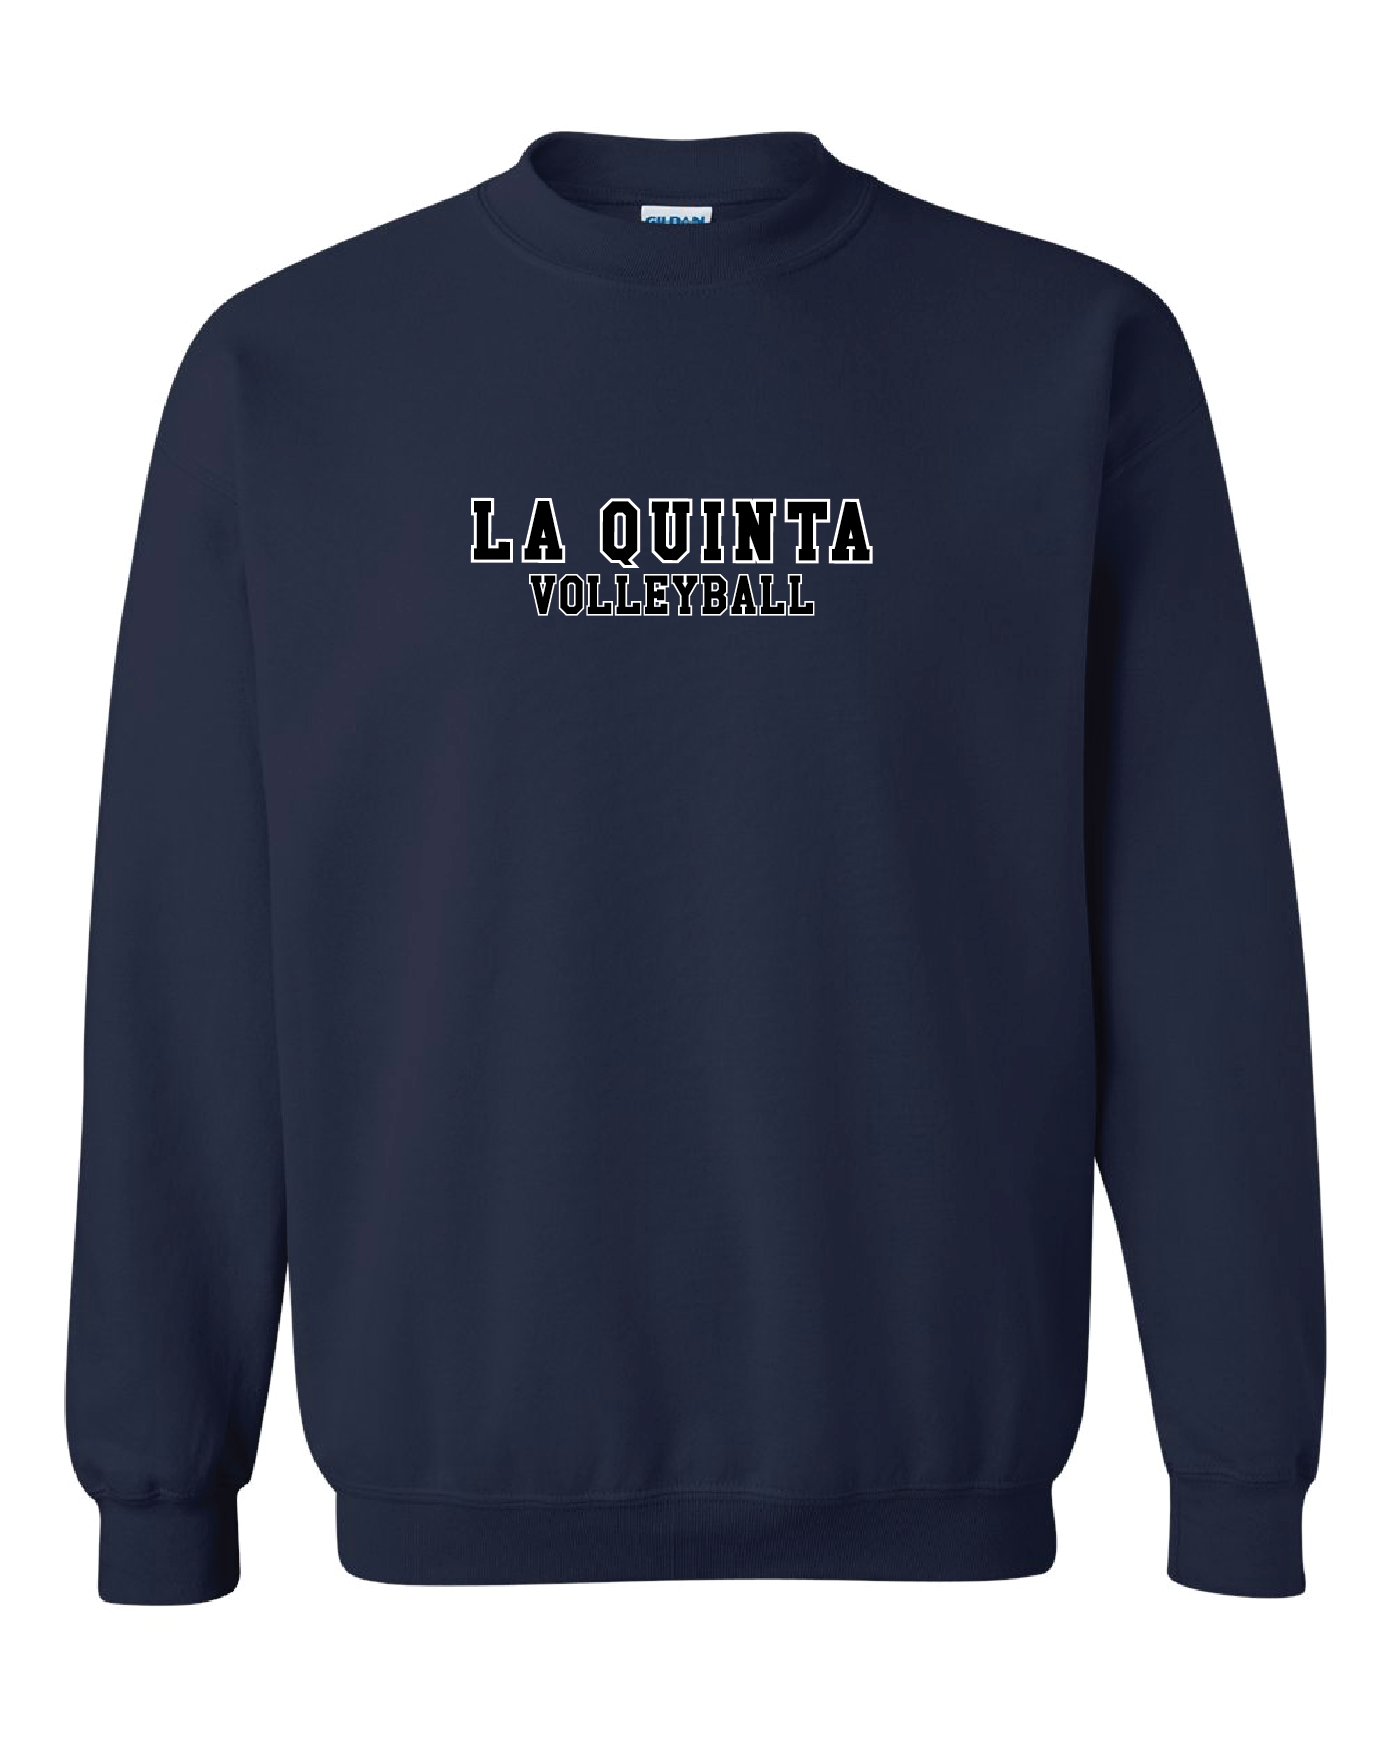 La Quinta Volleyball Unisex Crewneck Sweatshirt